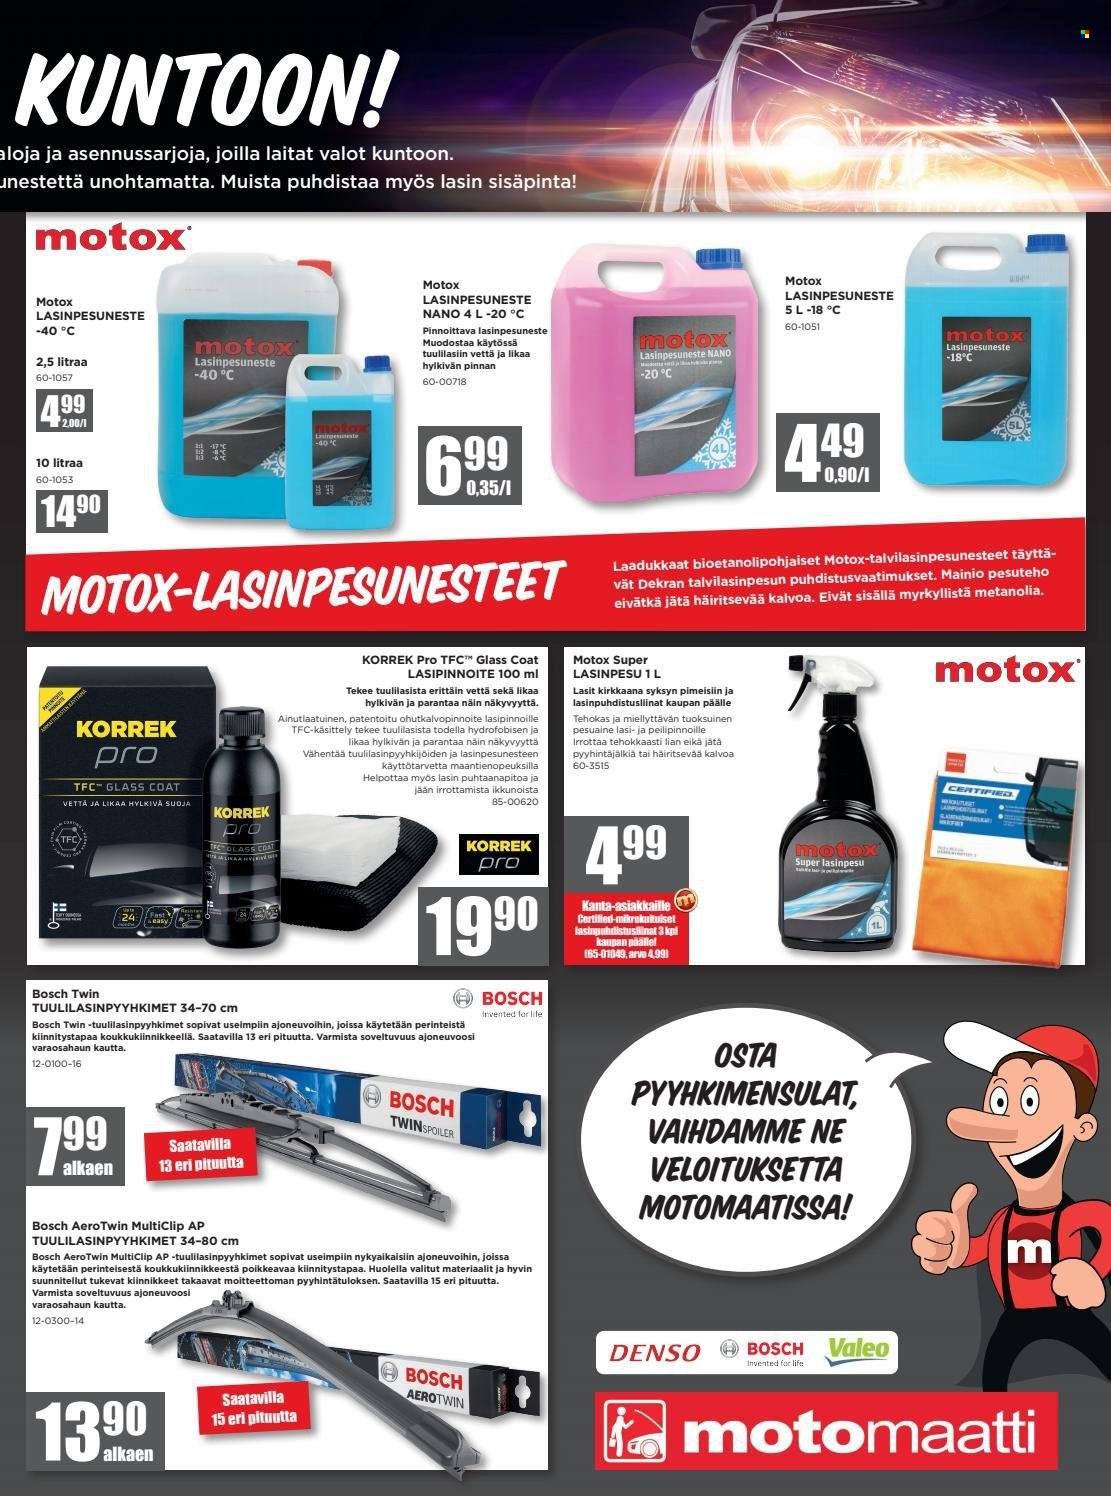 thumbnail - Motonet tarjoukset  - 15.09.2021 - 26.09.2021 - Tarjoustuotteet - Bosch, Denso. Sivu 7.